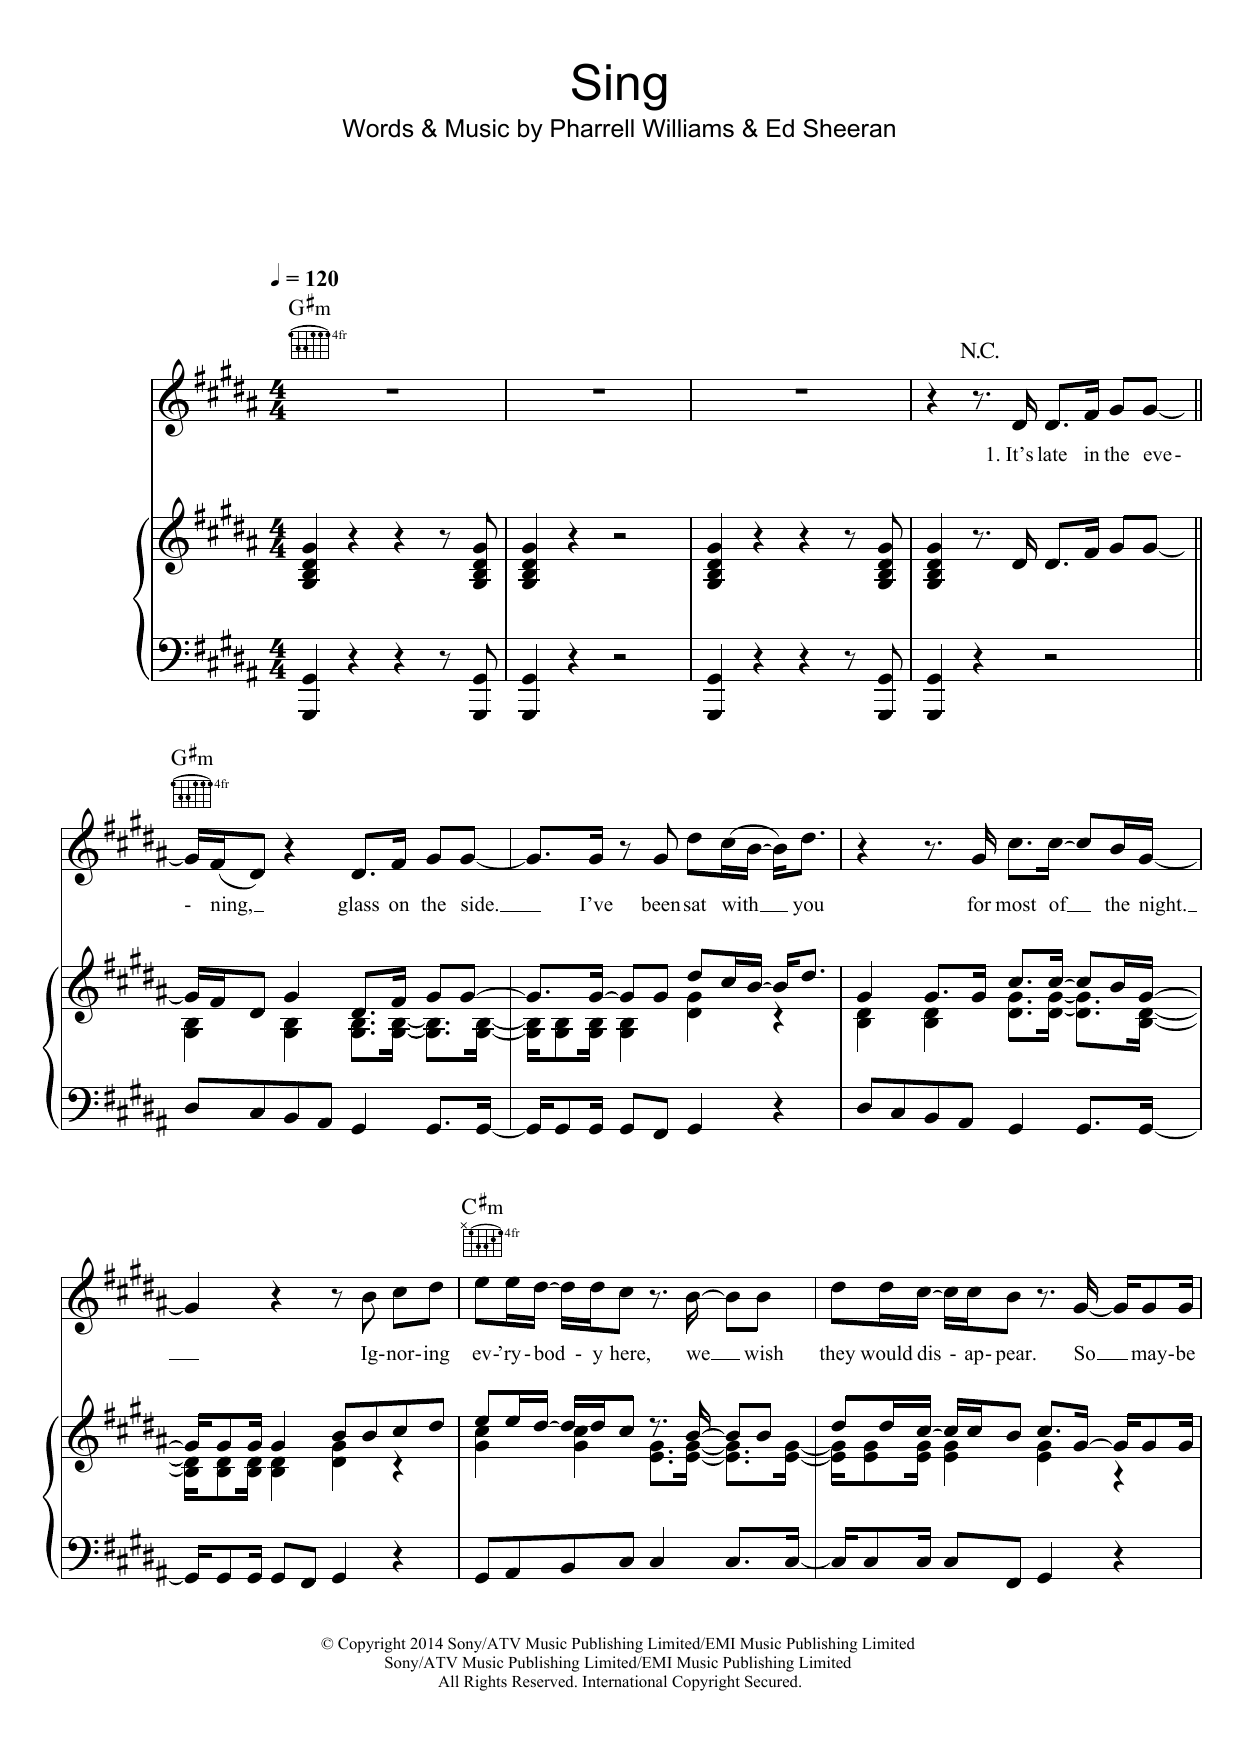 Ed Sheeran Sing Sheet Music Notes & Chords for Lyrics & Chords - Download or Print PDF